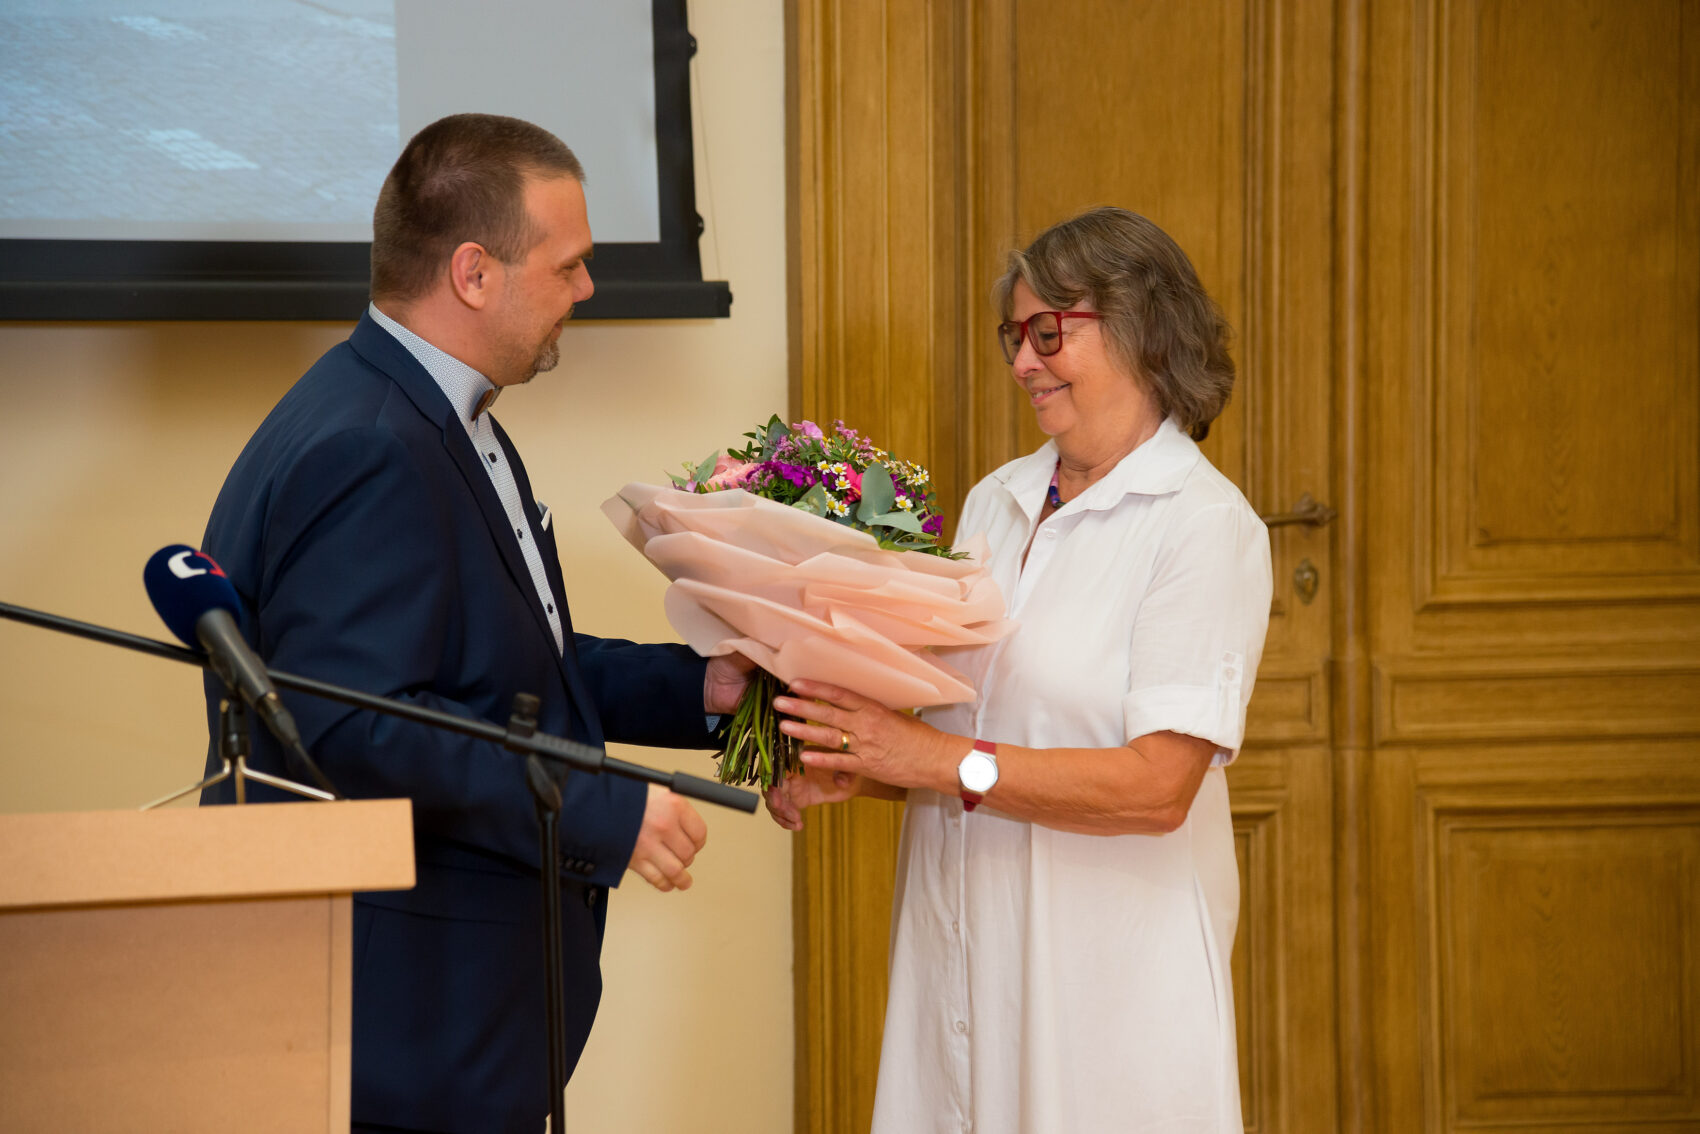 Ministr kultury Martin Baxa dává Heleně Koenigsmarkové kytici